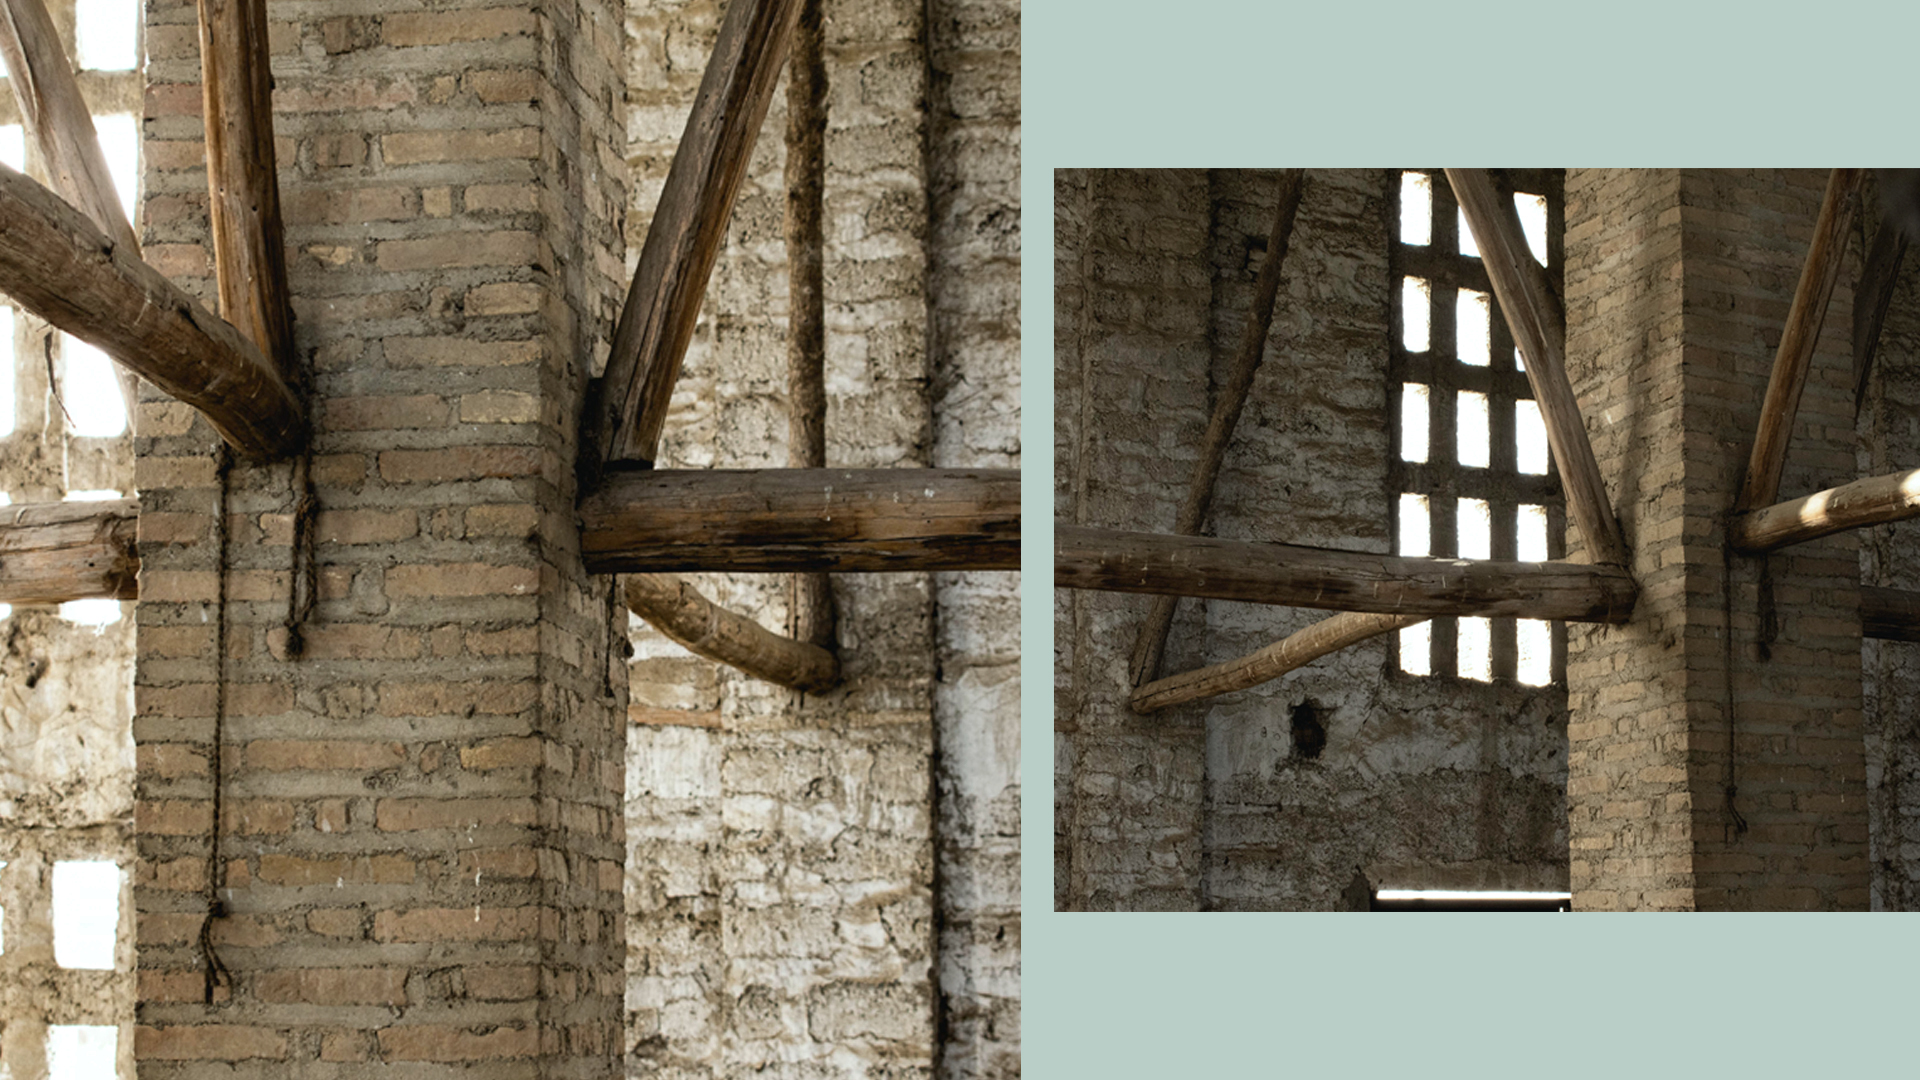 Detalle de encuentros entre pilastras de ladrillo y madera. Fotografías de Alfredo Ávila.